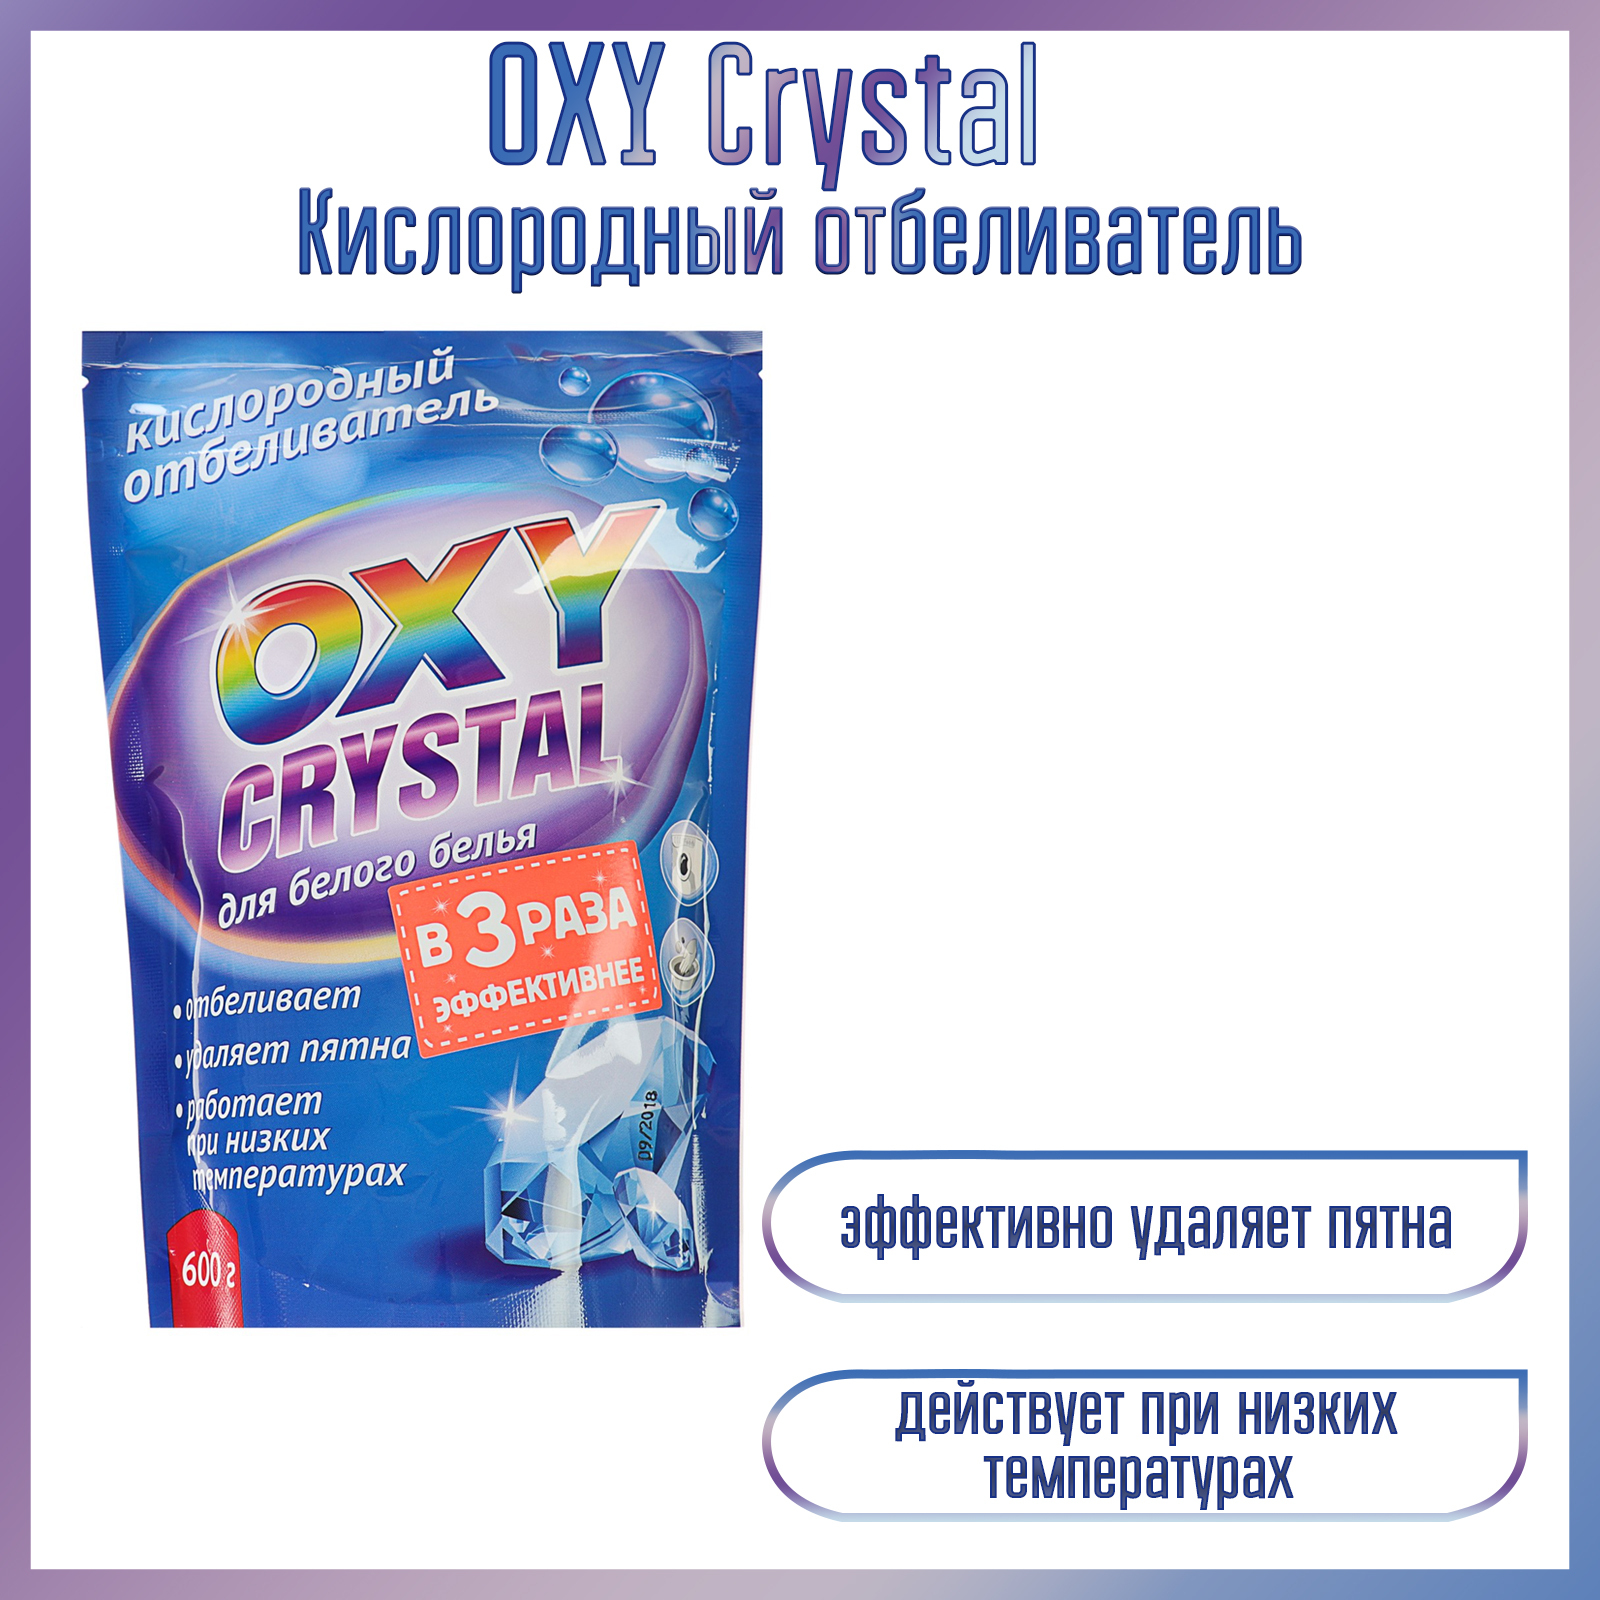 Кислородный отбеливатель можно ли в стиральную машину. Кислородный отбеливатель oxy Crystal для белого белья 600 г. Кислородный отбеливатель oxy Crystal 600г. Отбеливатель кислородный selena oxy Crystal для белого белья 600гр. Отбеливатель oxy Crystal 600г кислородный д/цветного пакет.